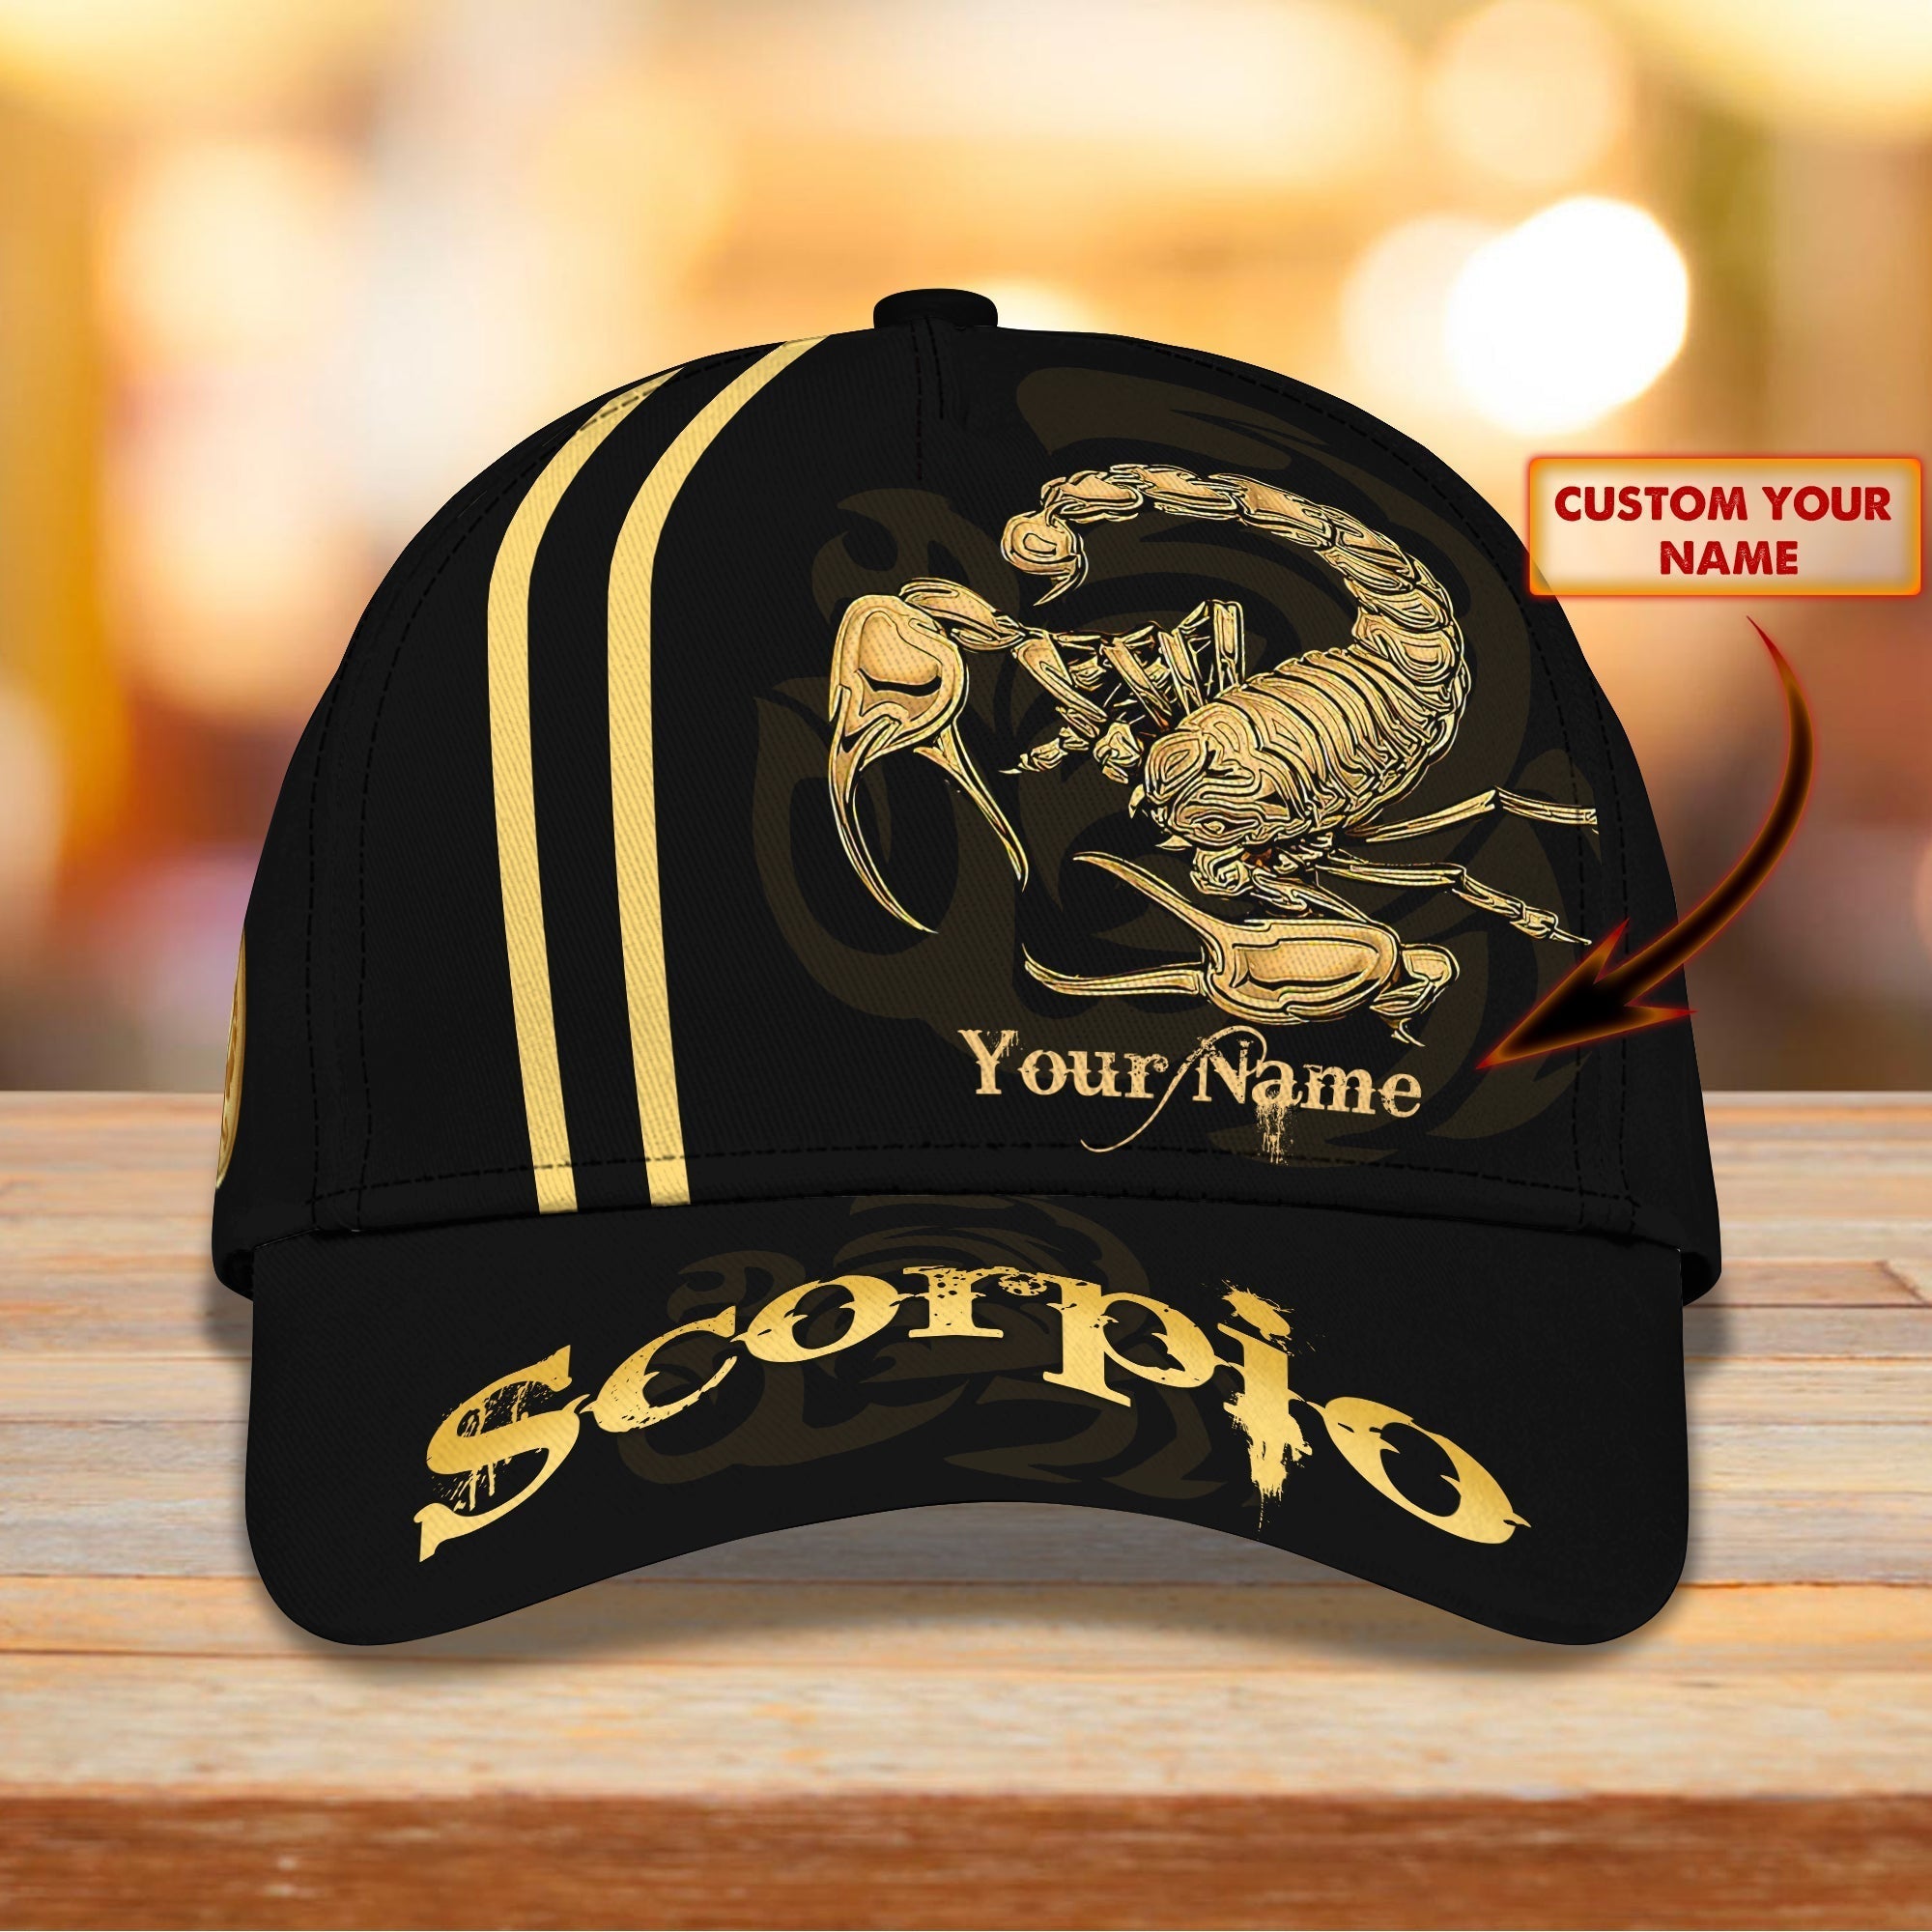 Customized Scorpio Baseball Cap Hat, Full Printed Scorpio Hat, Scorpio Cap Hat